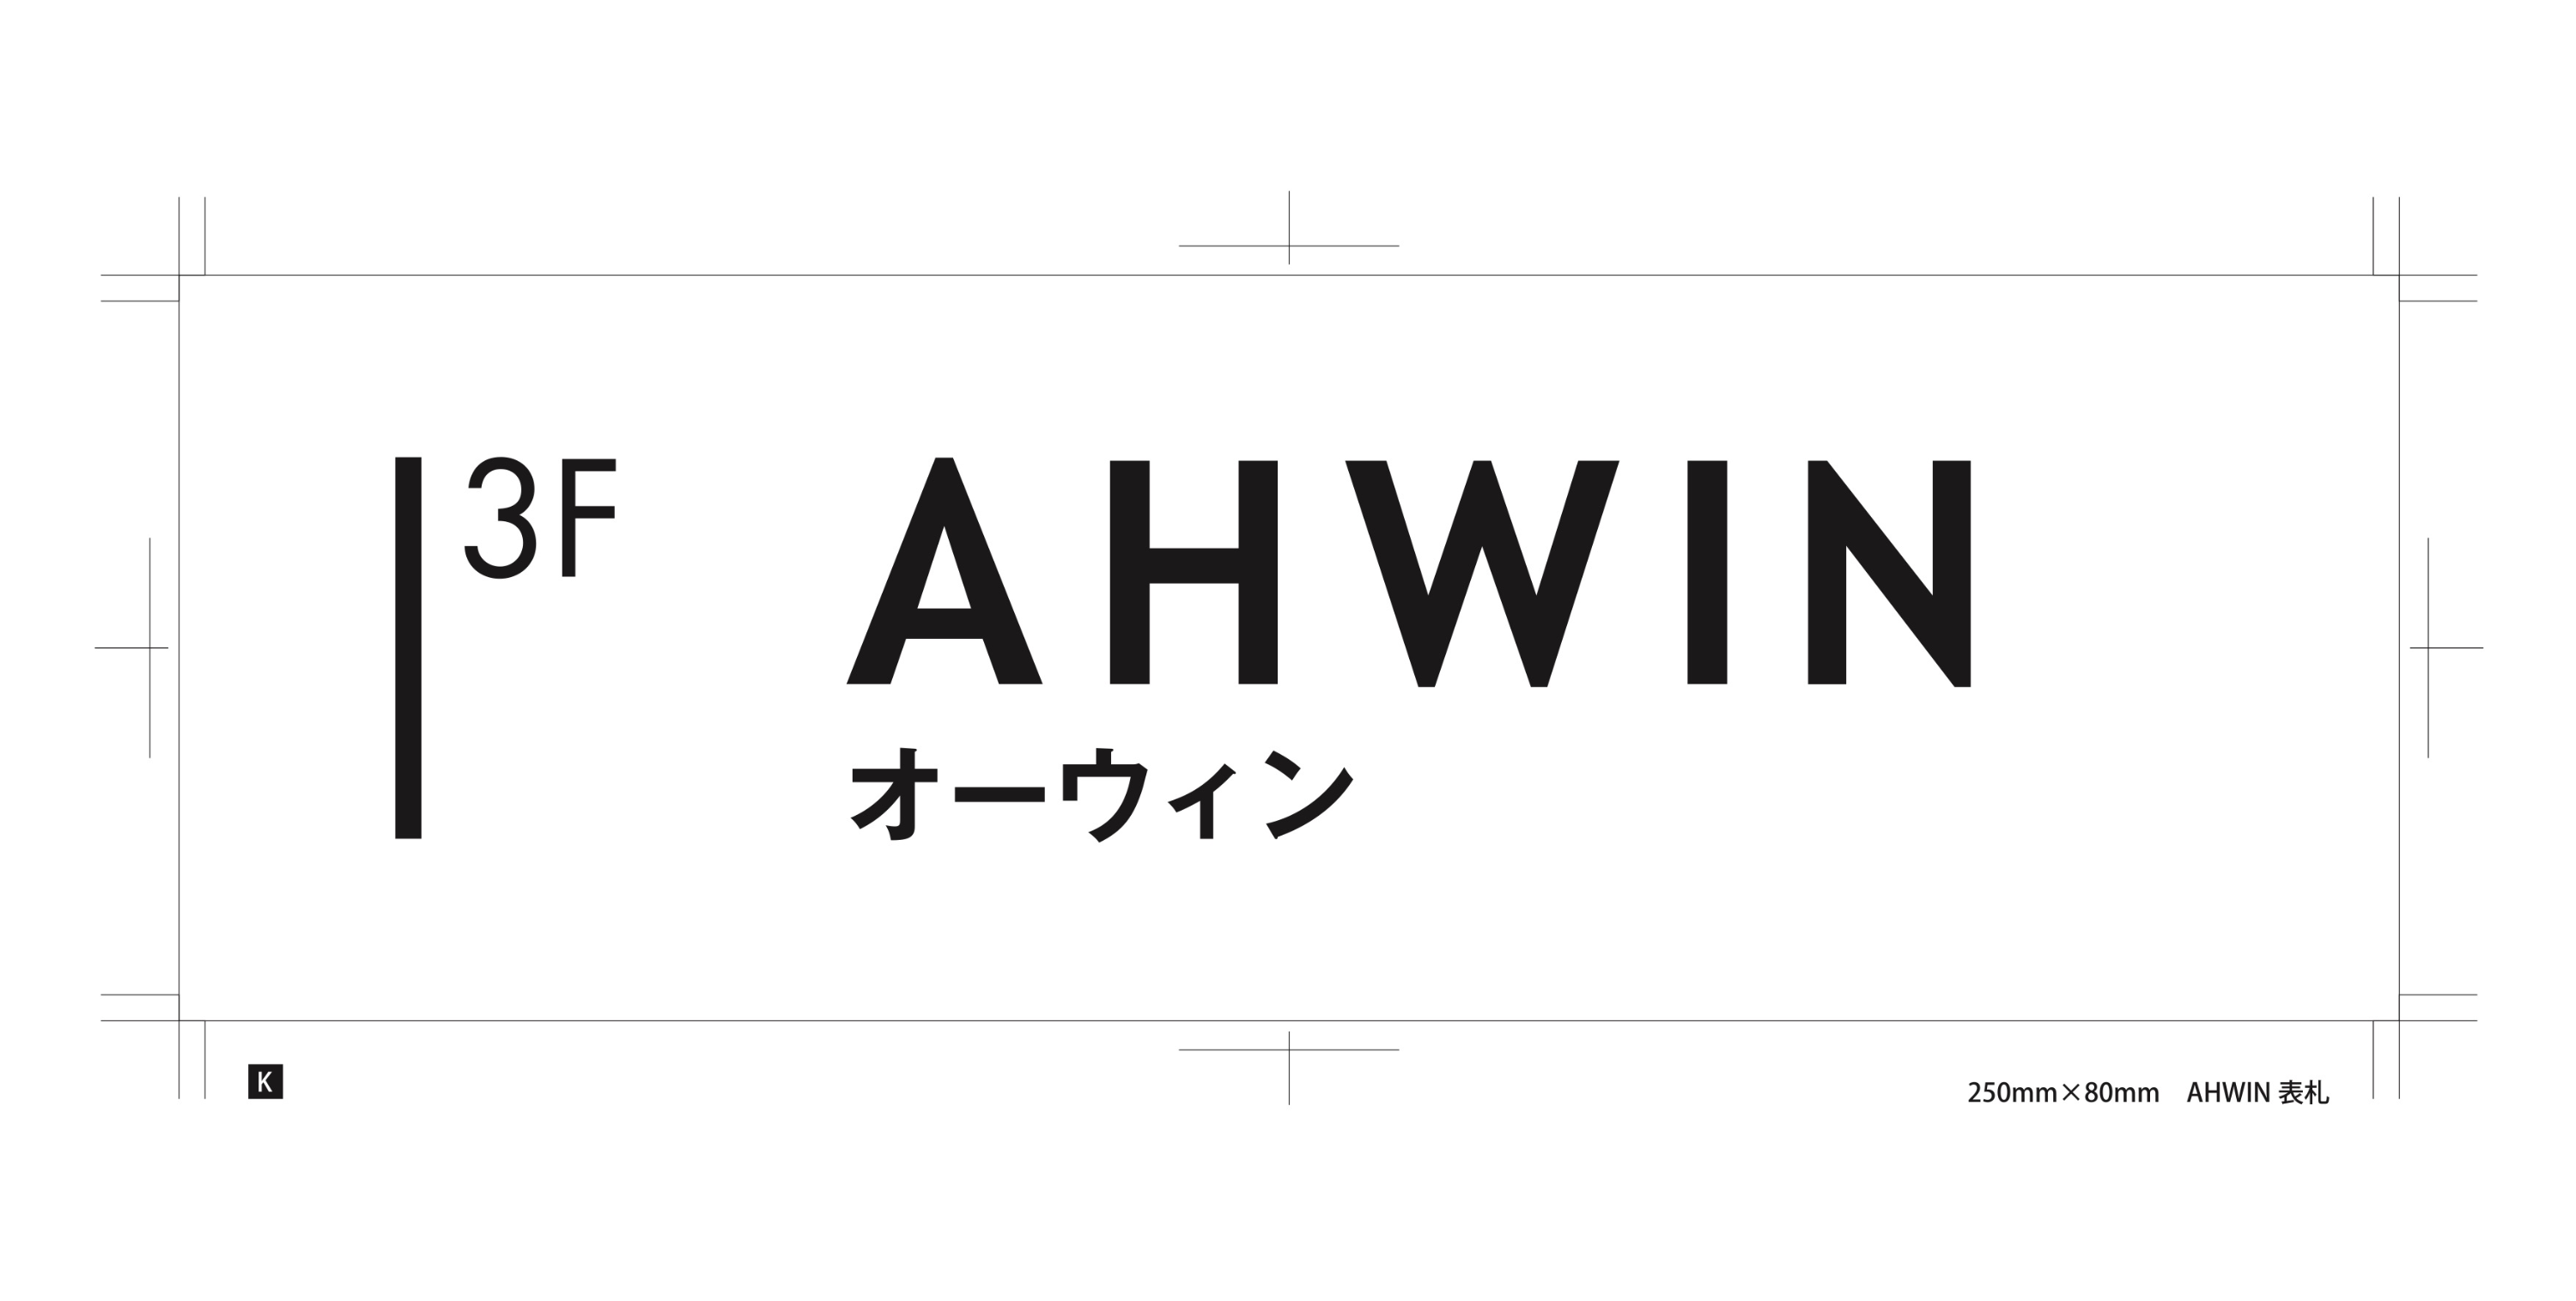 Ahwin オリジナル